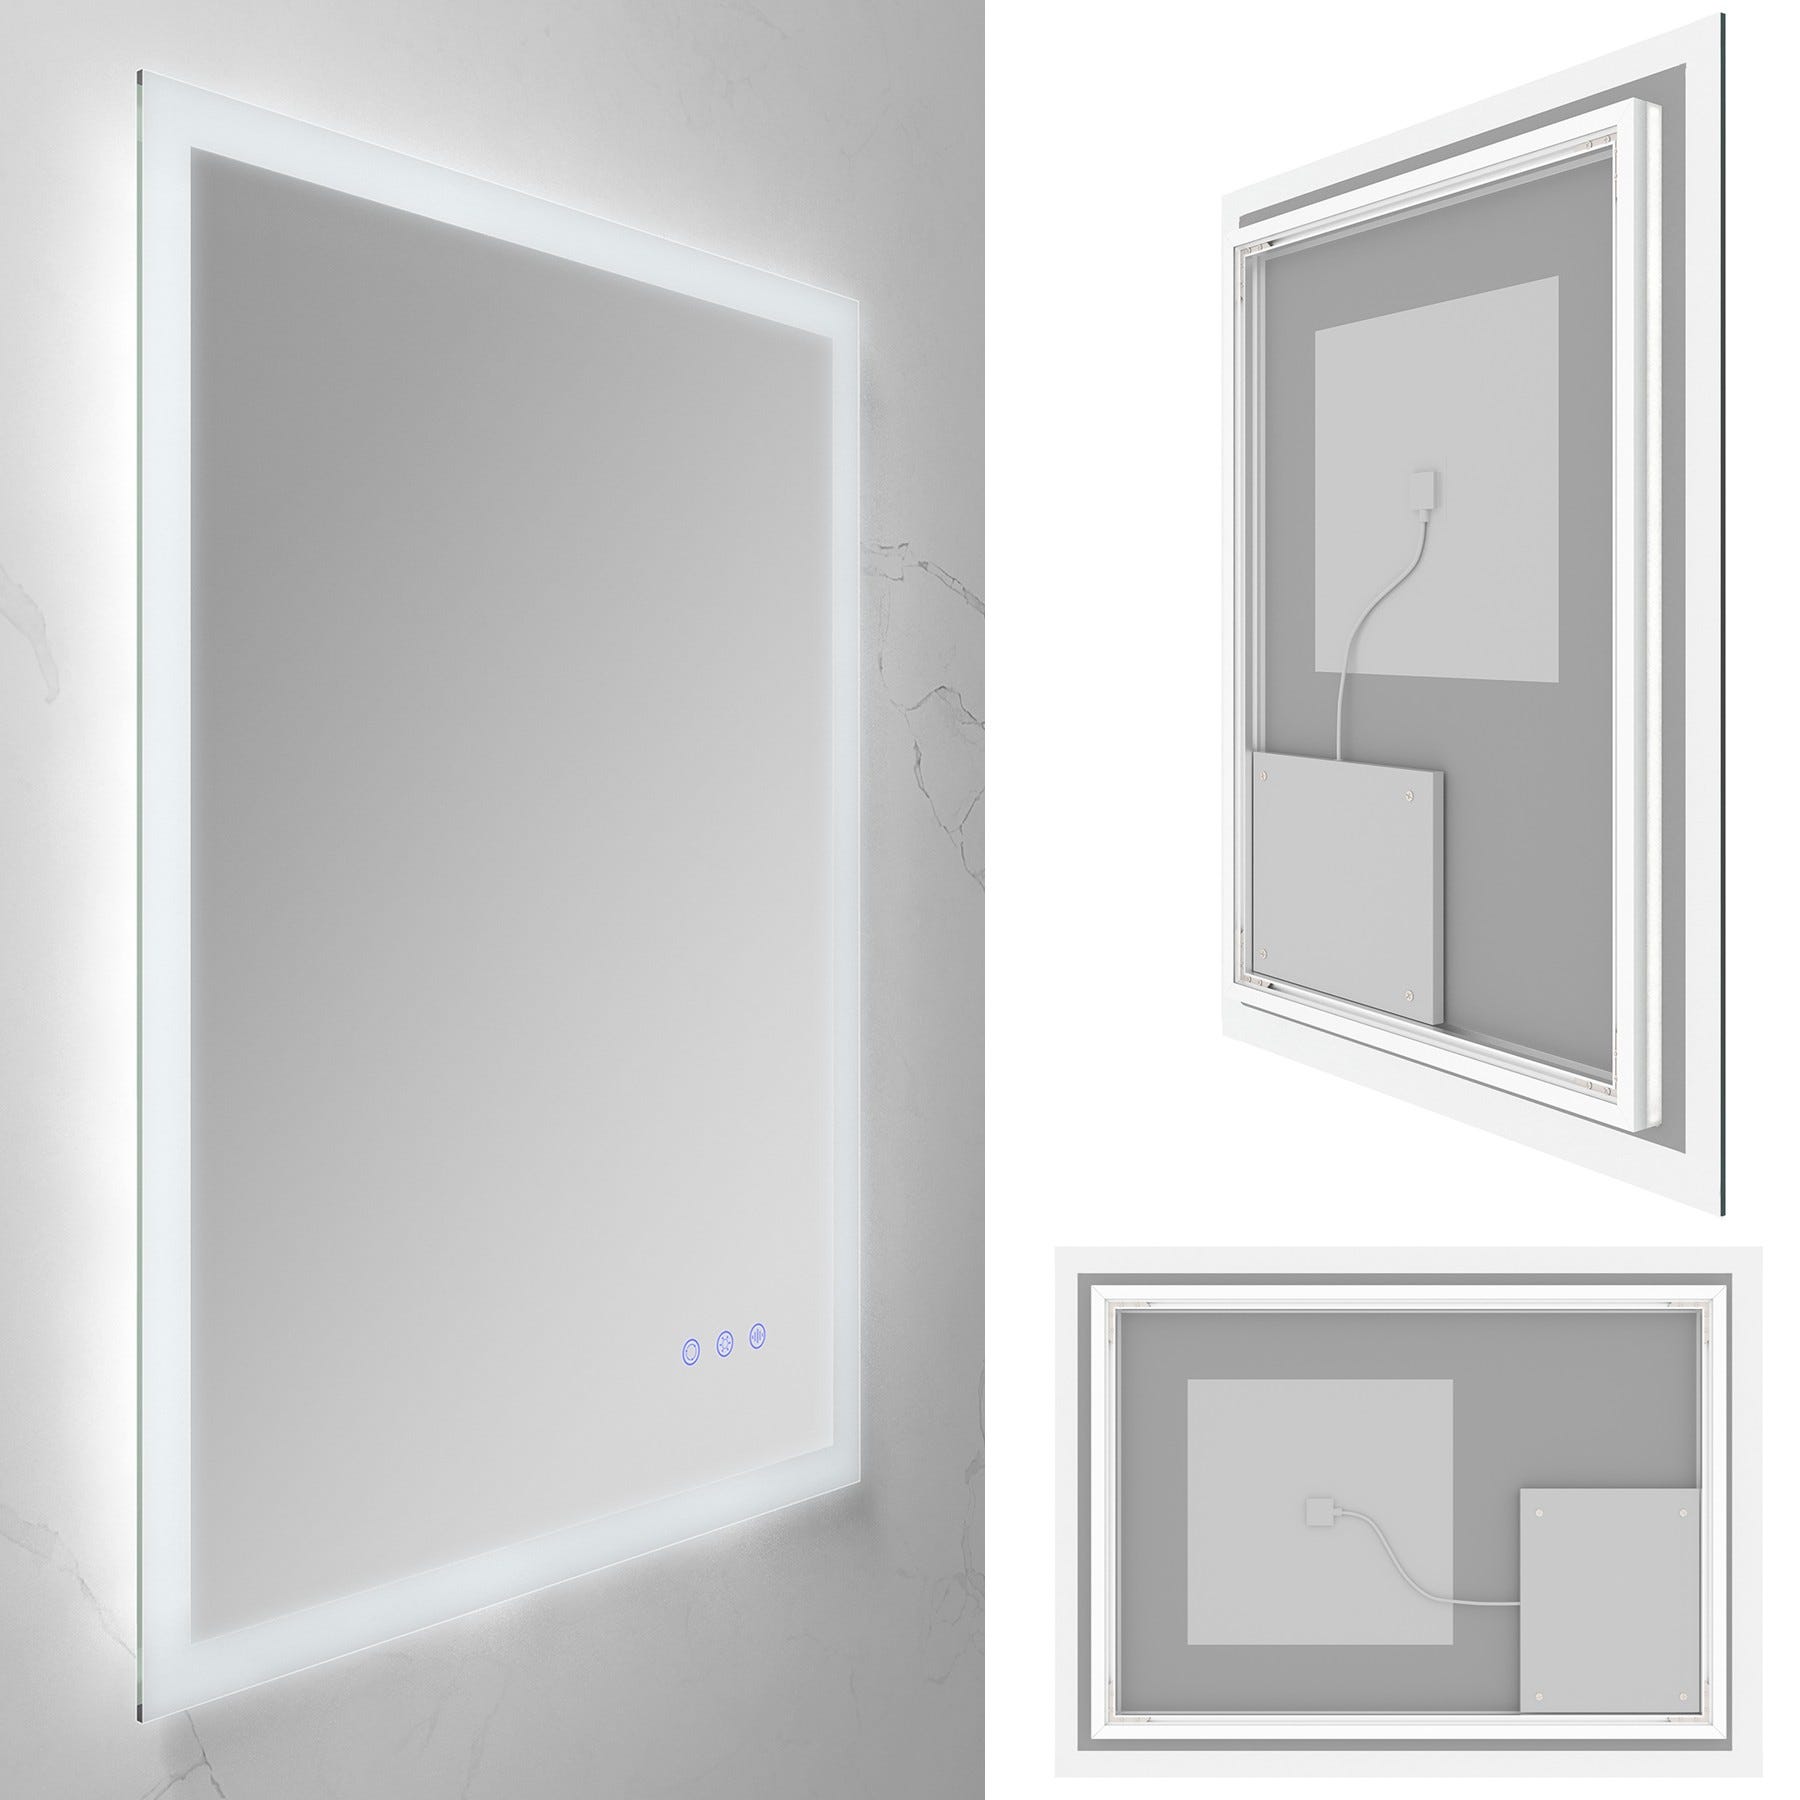 FRAME Miroir lumineux salle de bain LED 3 couleurs + intensité réglable & fonction anti-buée 60 x 80 cm 3